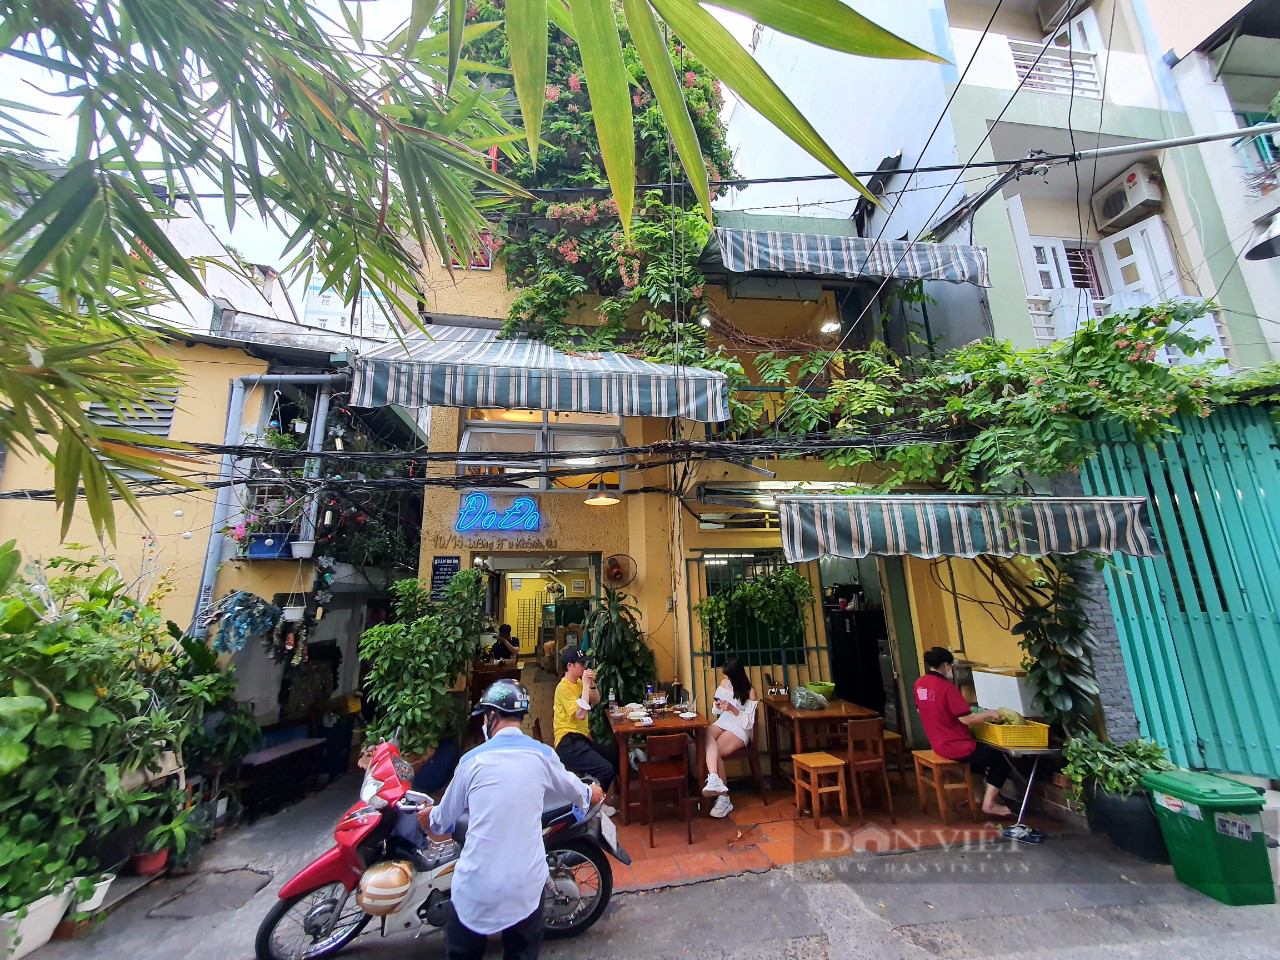 Sài Gòn quán: Địa chỉ ẩm thực xứ Quảng nổi tiếng bậc nhất, chủ nhân là nhà văn của nhiều thế hệ độc giả - Ảnh 1.